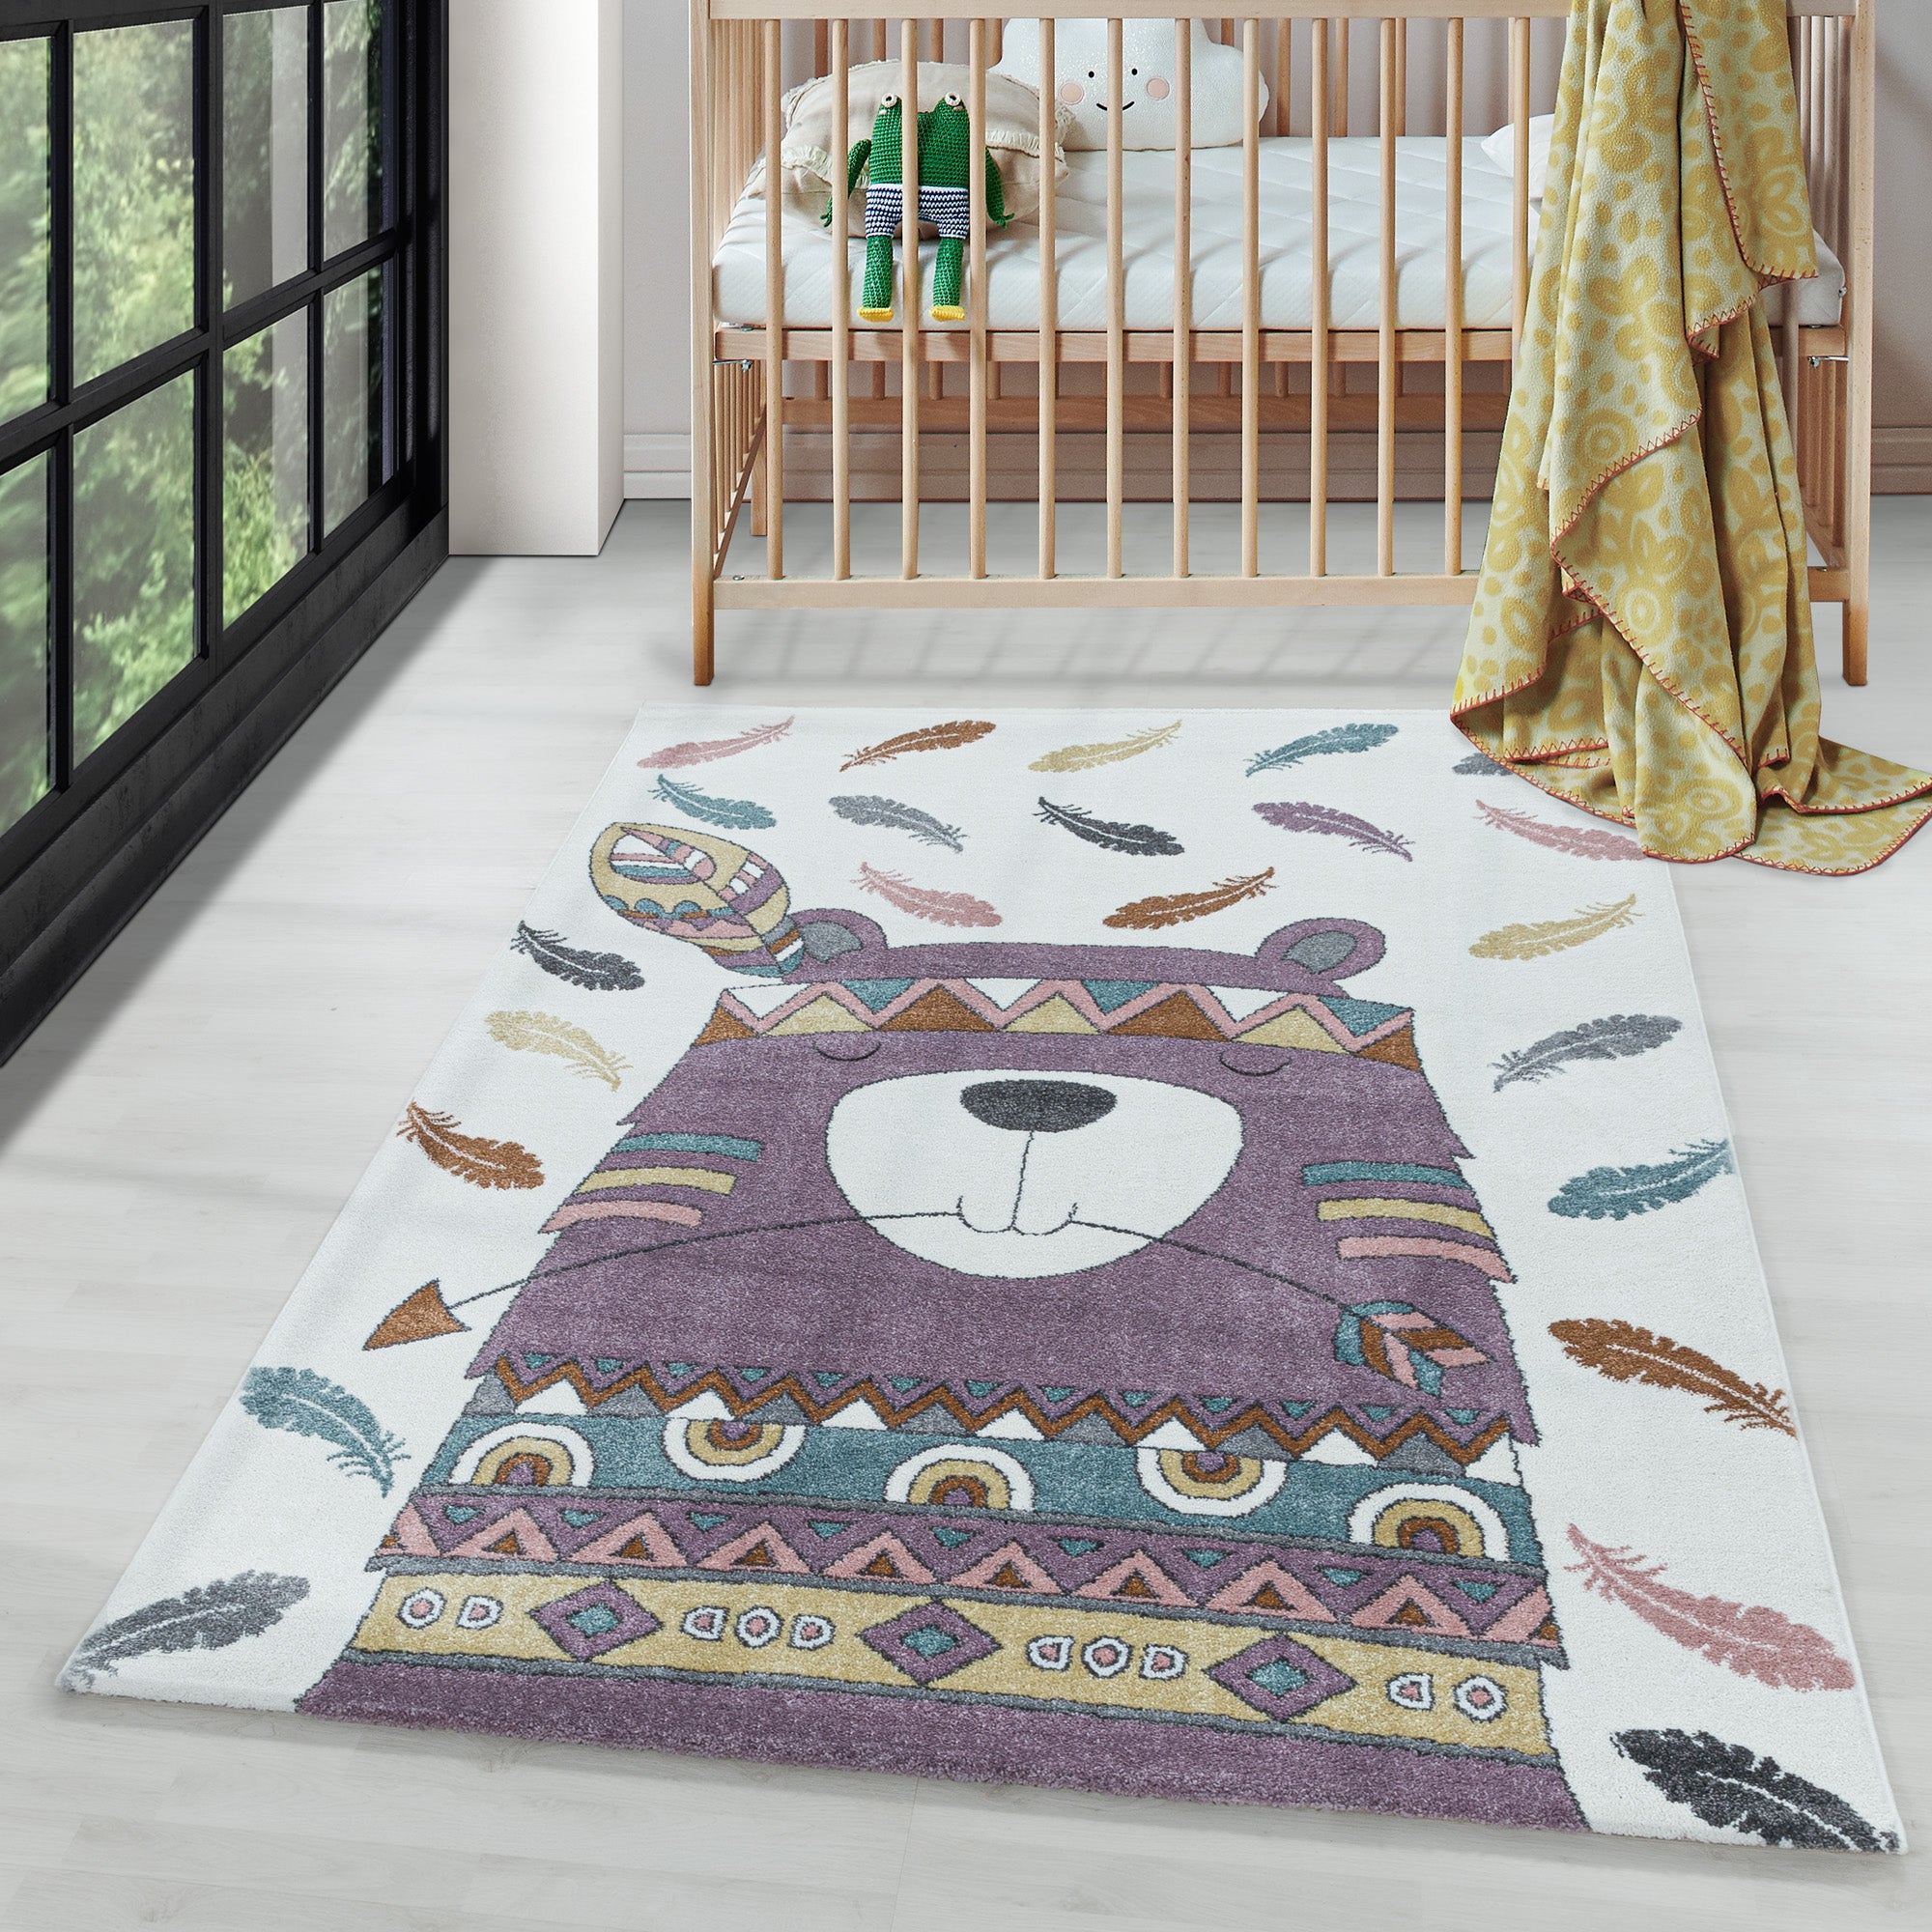 Kinderteppich süße Bär Design Modern Weich Pflegeleicht Teppich Kinderzimmer